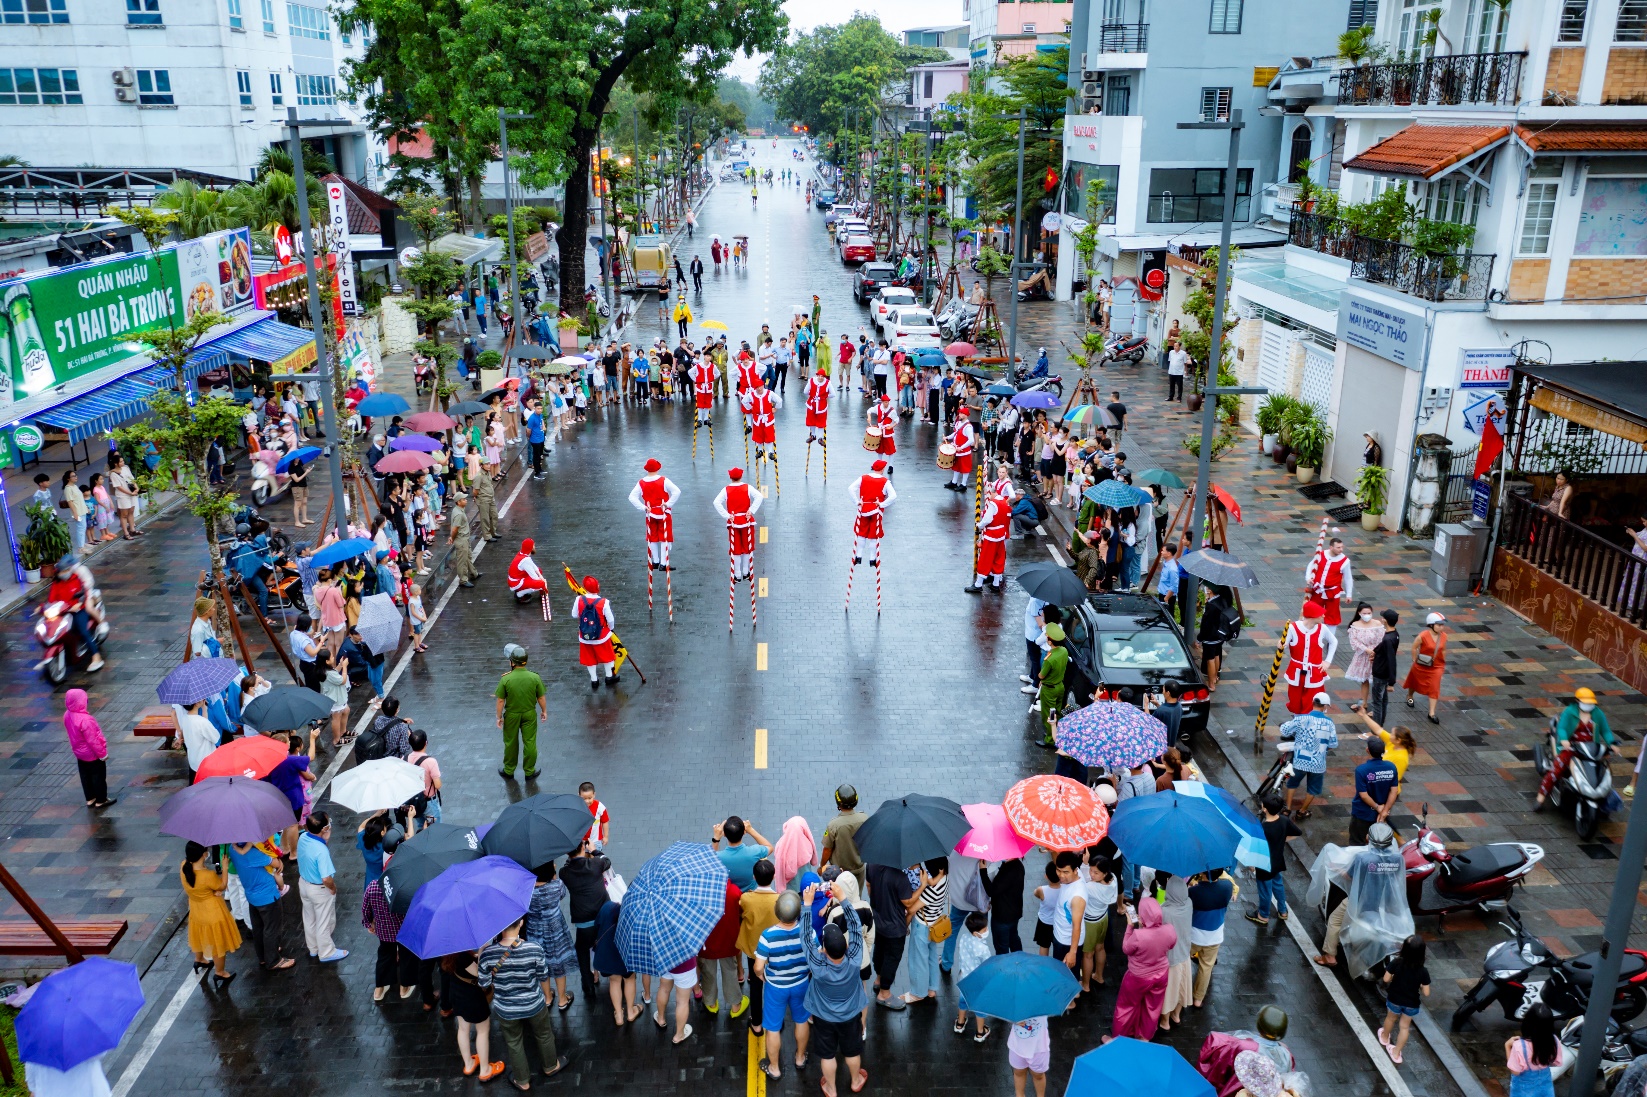 Thú vị đoàn nghệ thuật biểu diễn cà kheo trên đường phố Huế - 10